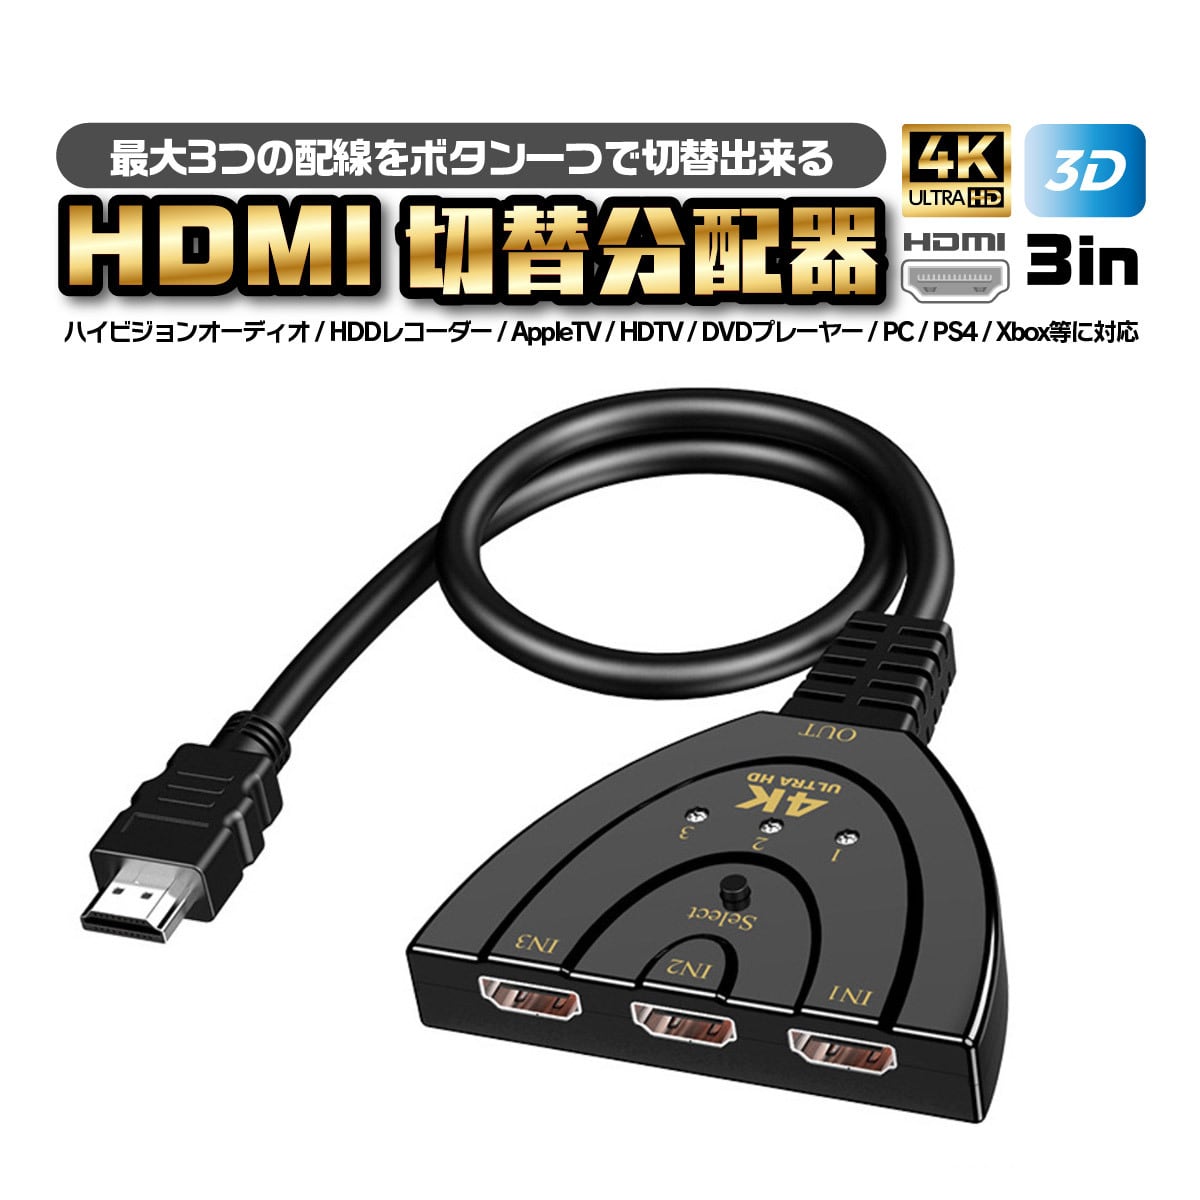 HDMI 分配器 切替器 セレクター 切り替え ディスプレイ 複数 3入力 1